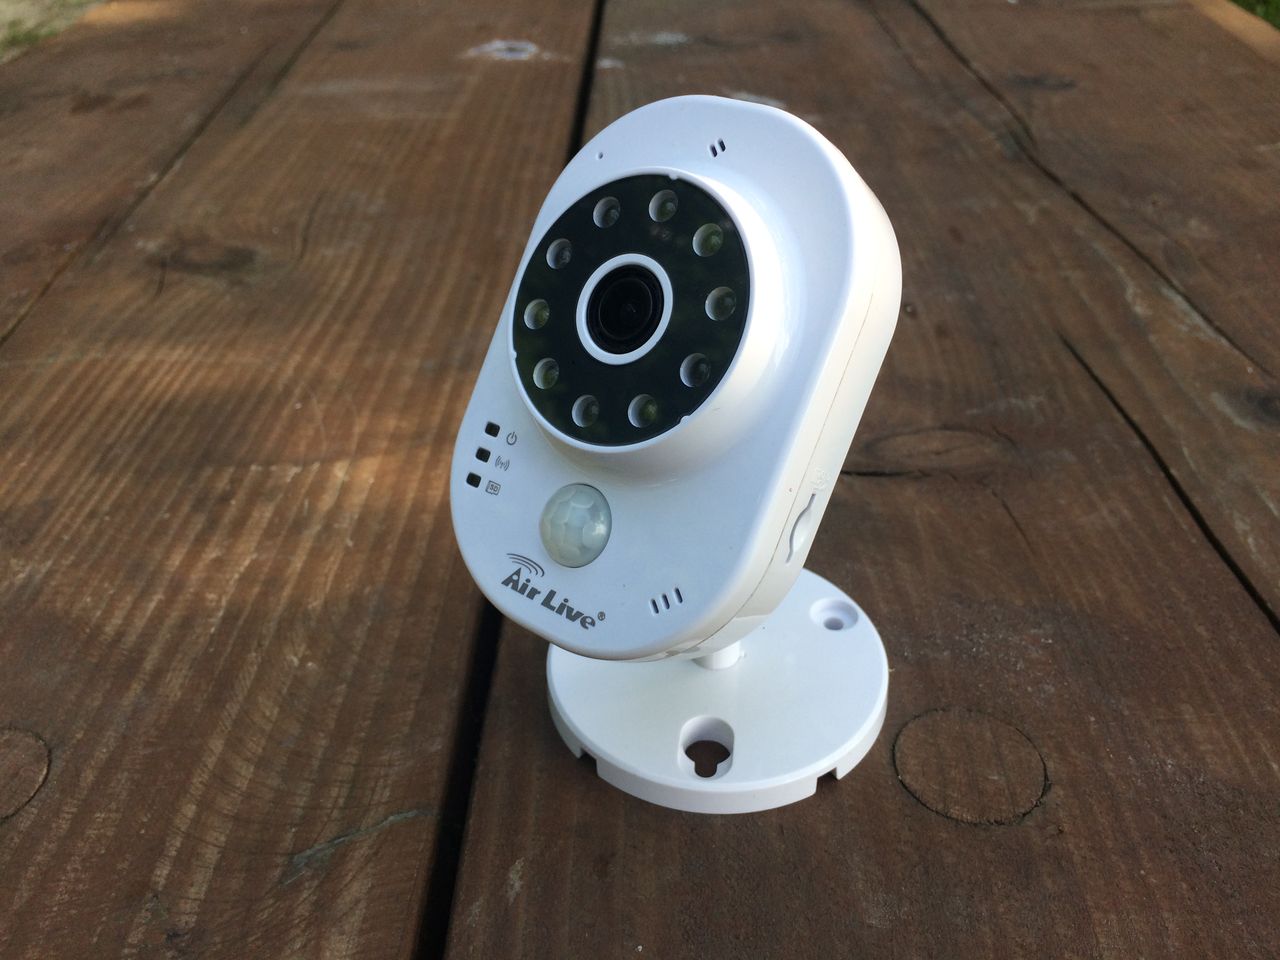 Kamera, termometr, a może domofon? Recenzja inteligentnej kamery AirLive SmartCube 300W